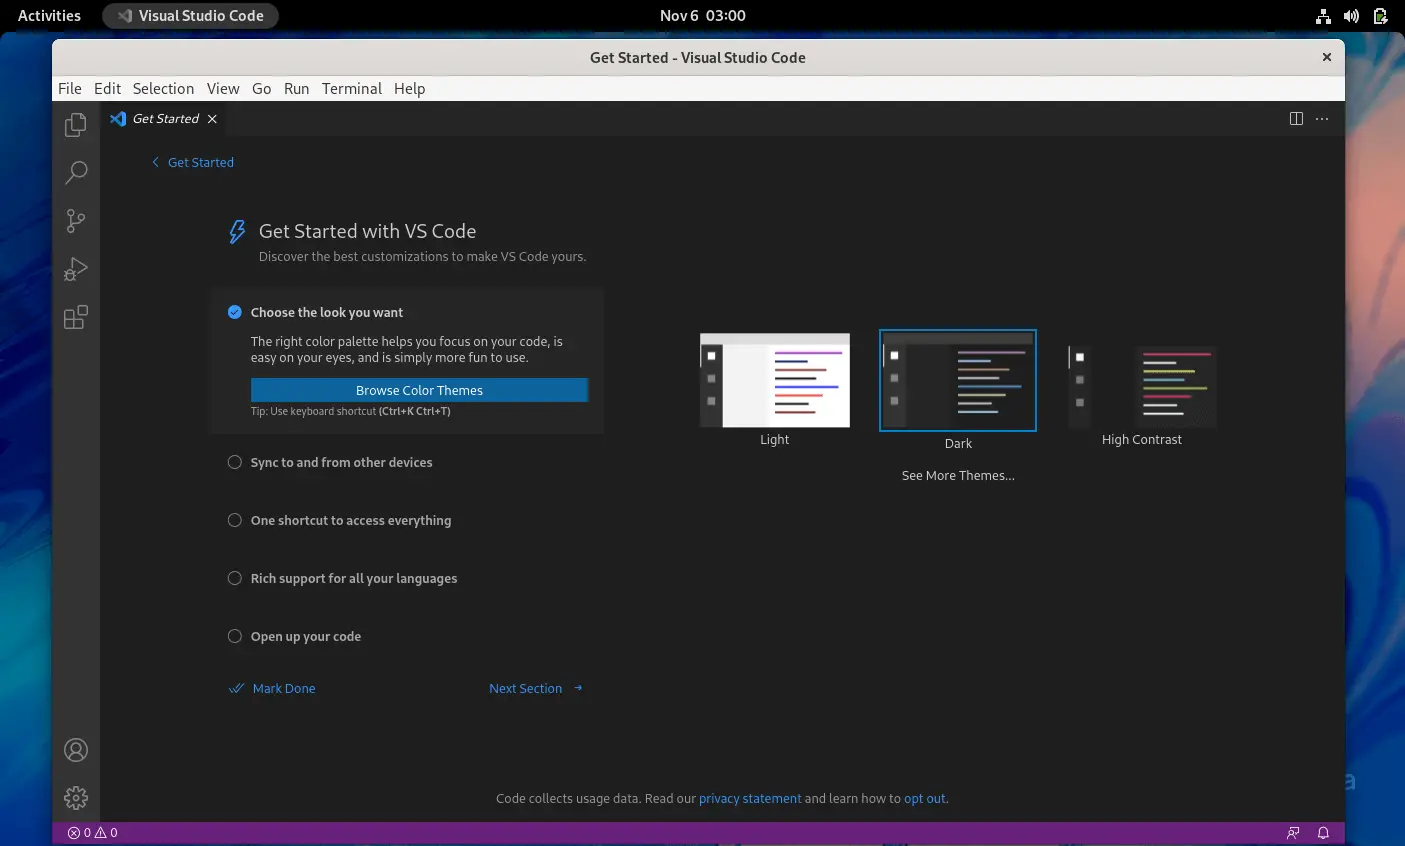 Visual Studio Code running on Fedora